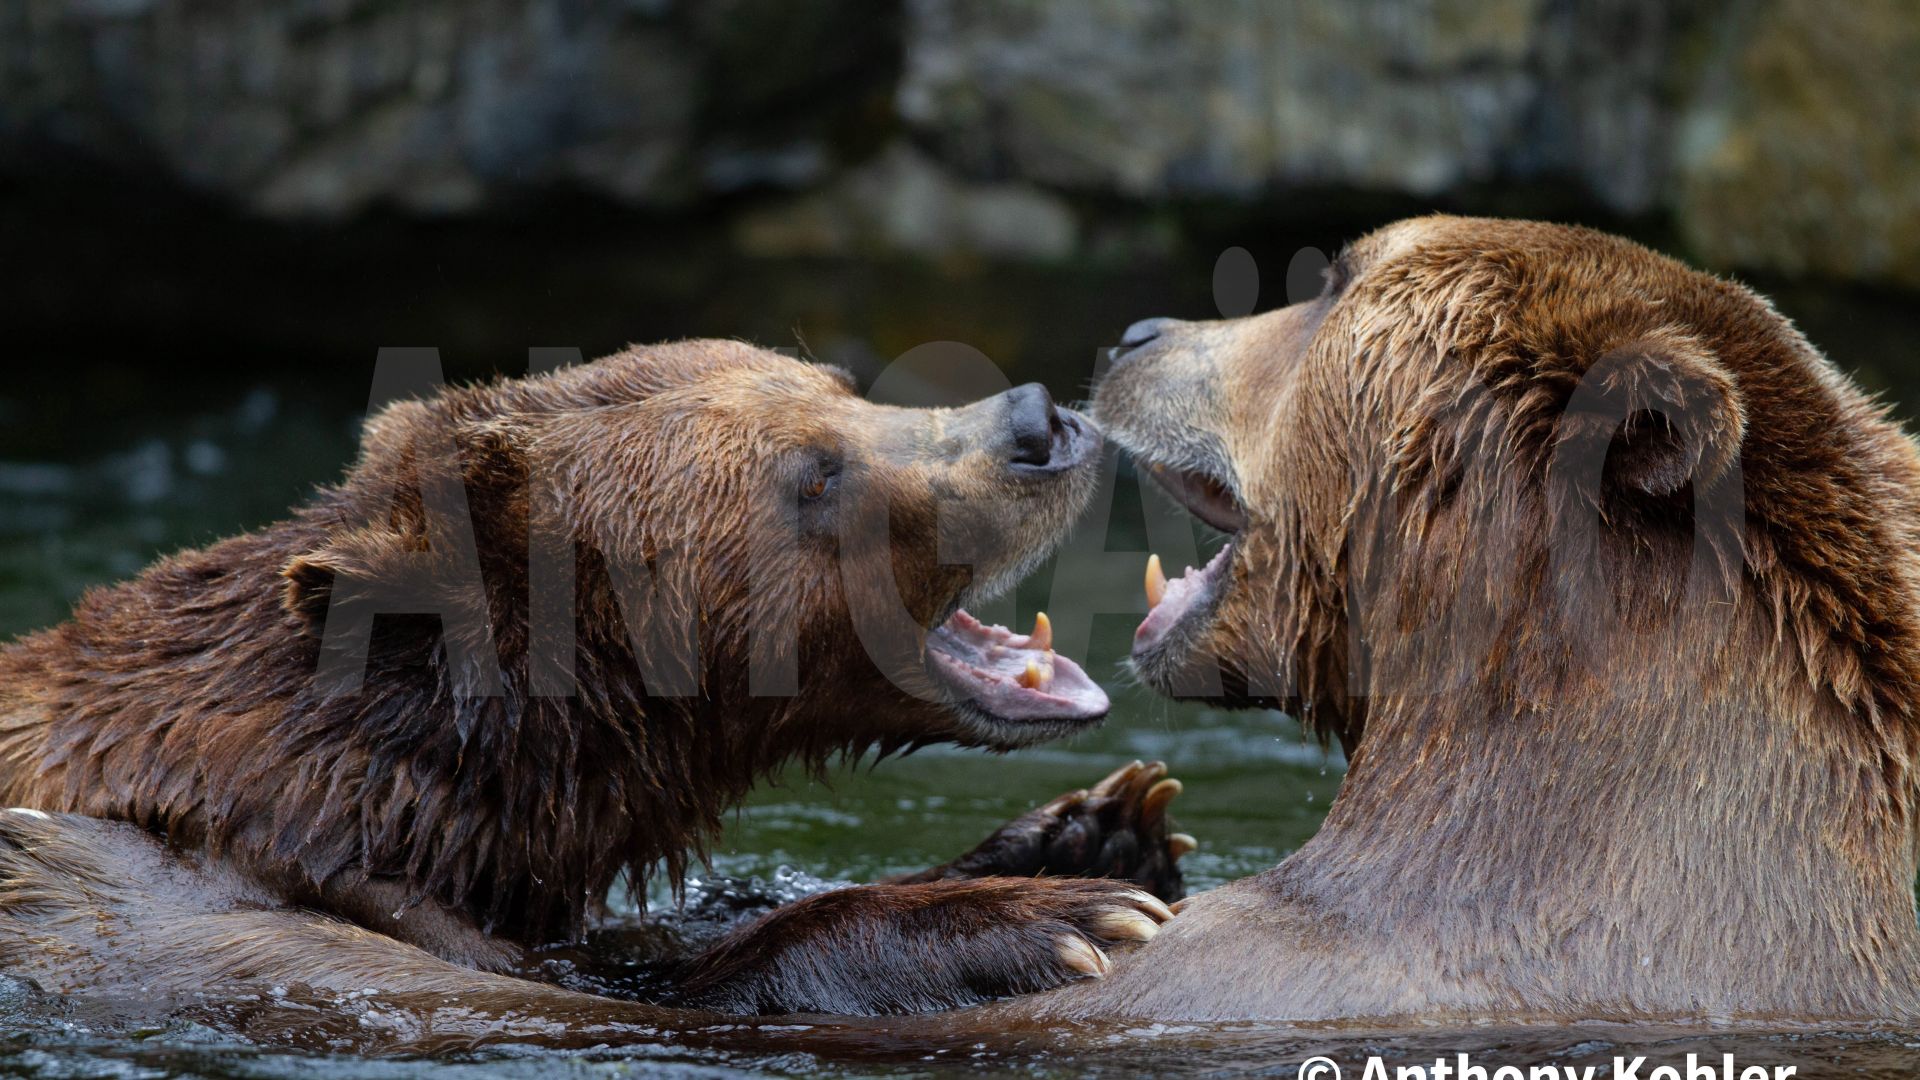 Bêtes de science : l'ours brun sait se servir d'outils